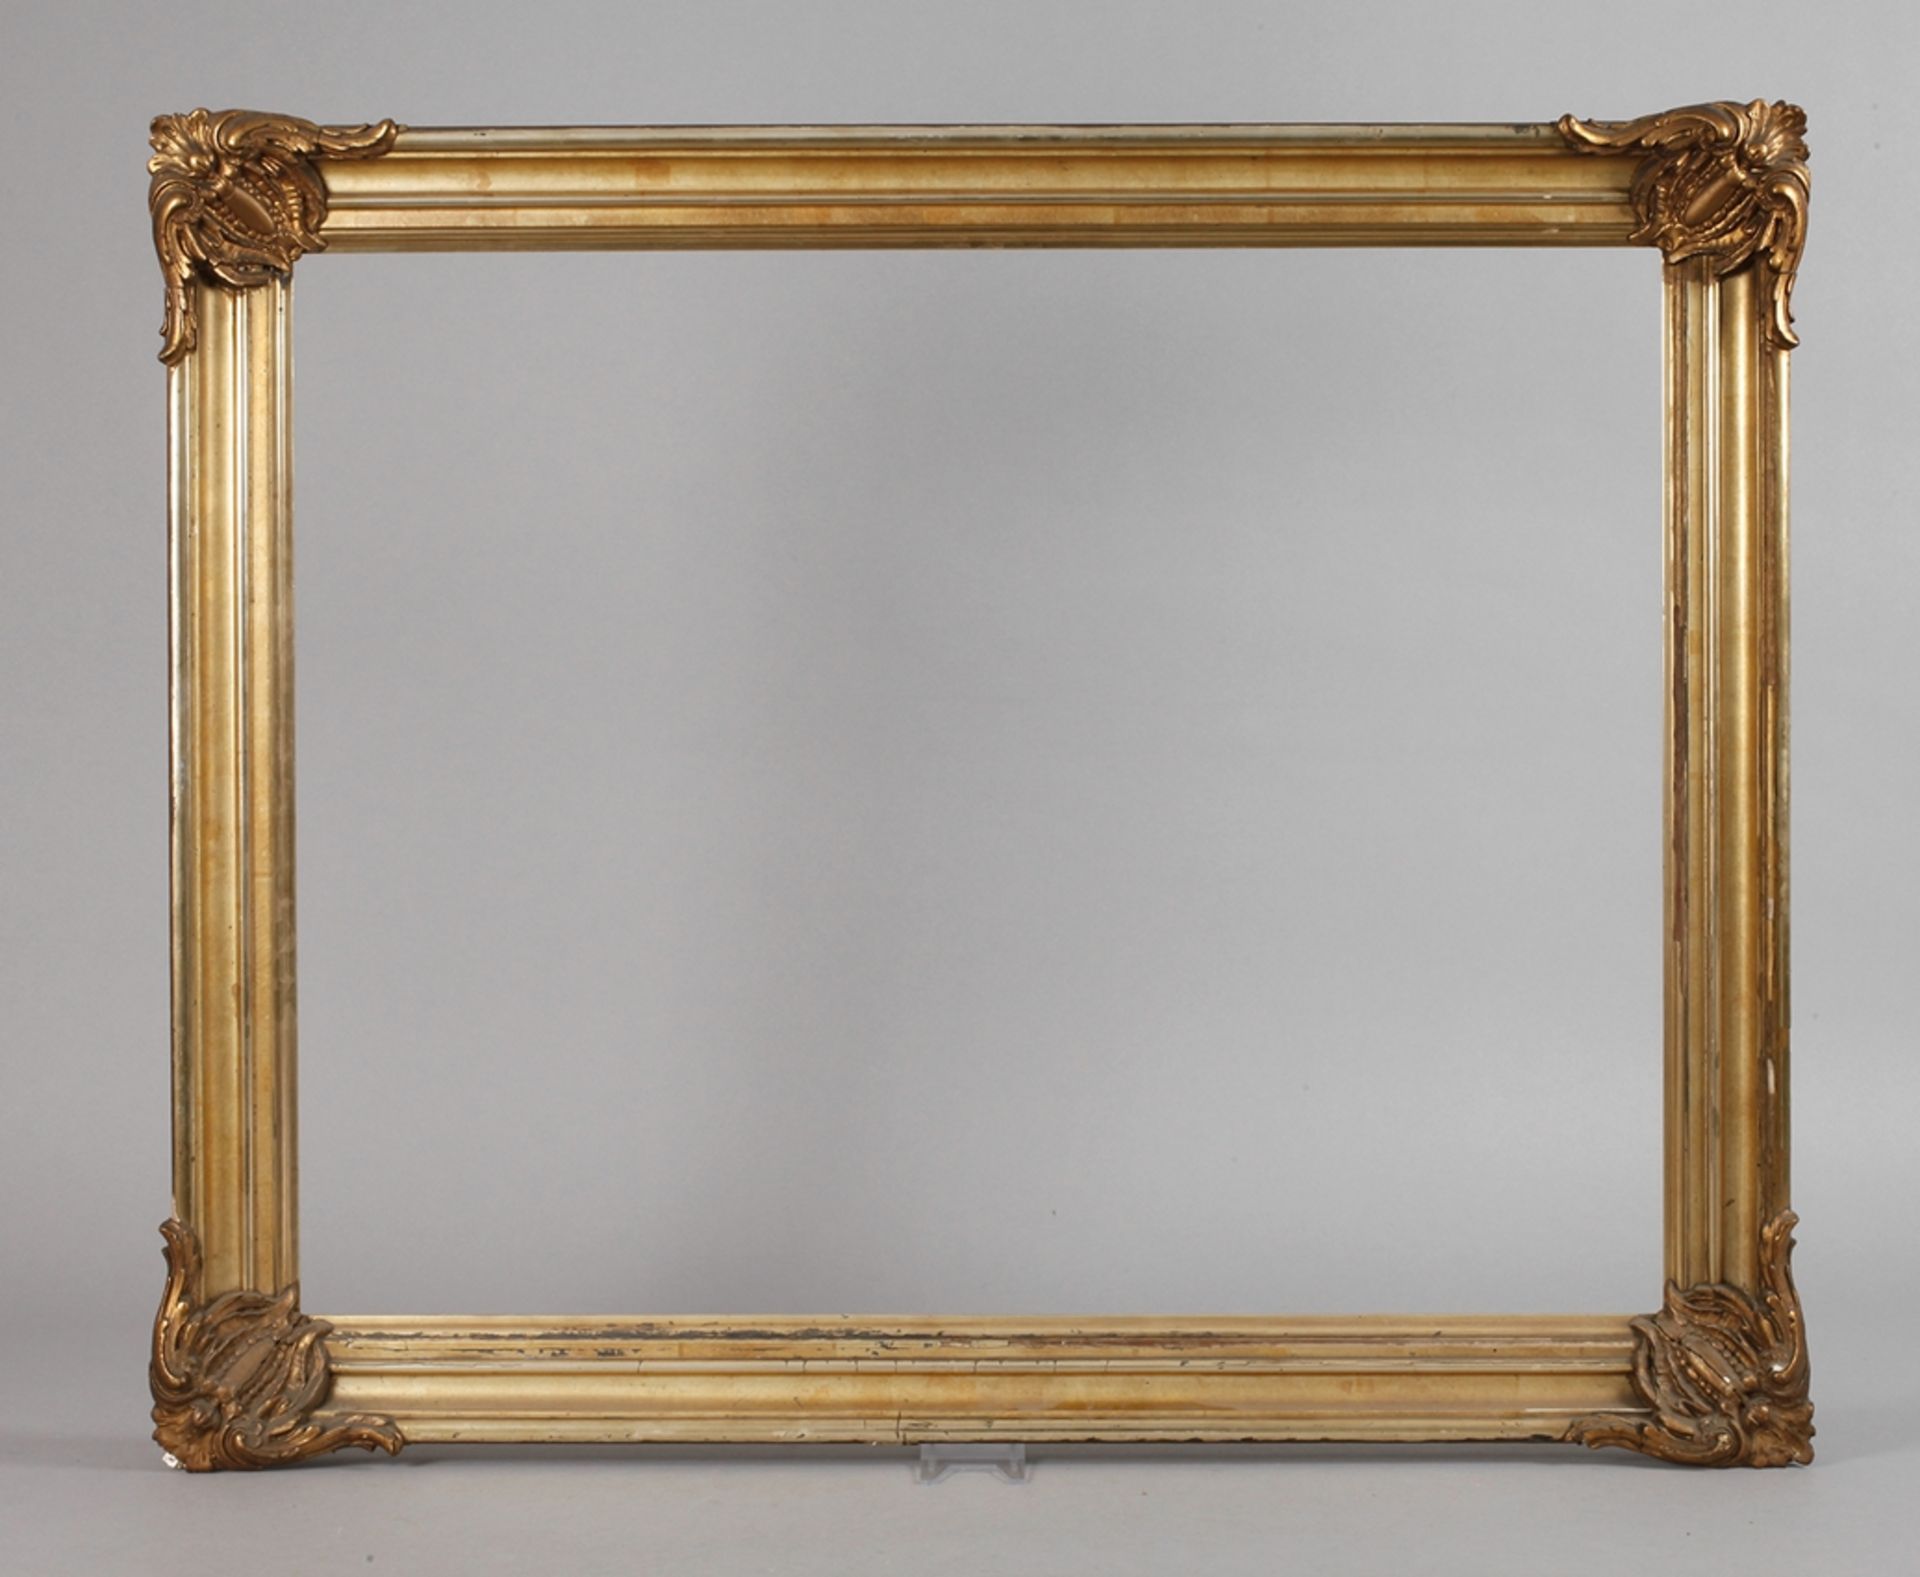 Rahmen Spätbiedermeierum 1860, profiliert und blattvergoldet, verziert mit aufgelegten Ecken,